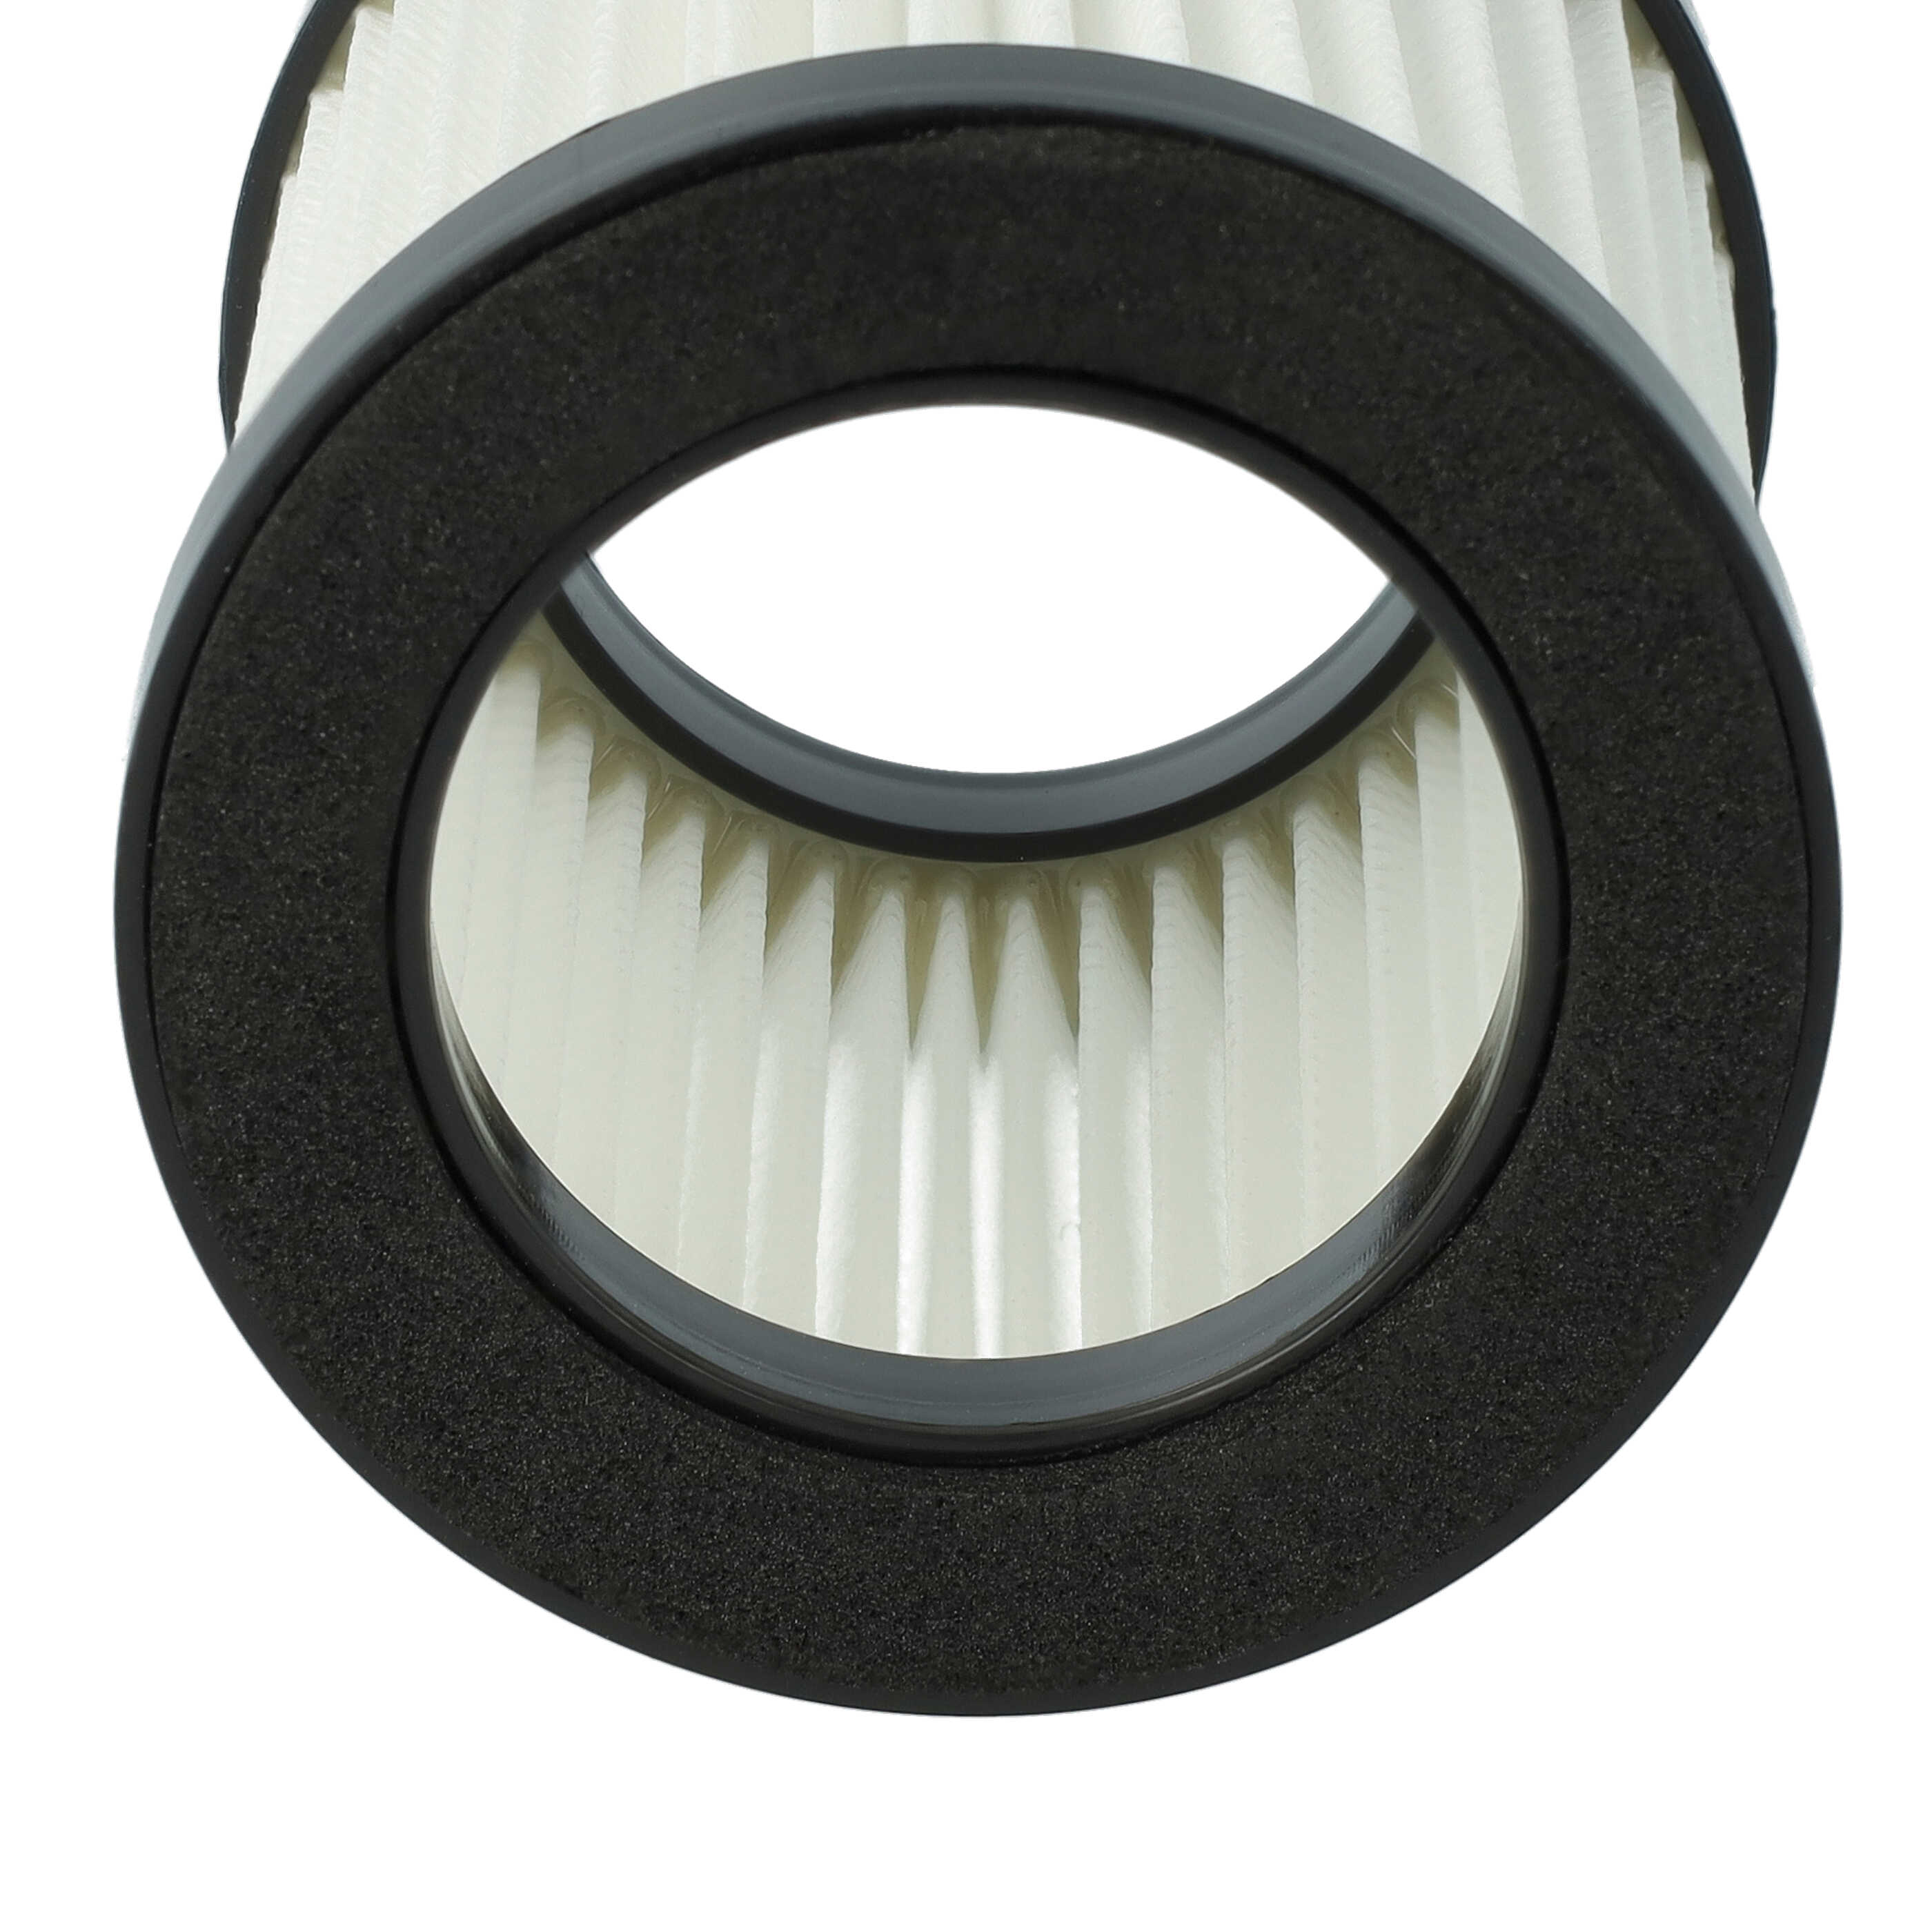 2x Filtre pour aspirateur Moosoo, Beldray XL-618A - filtre F8